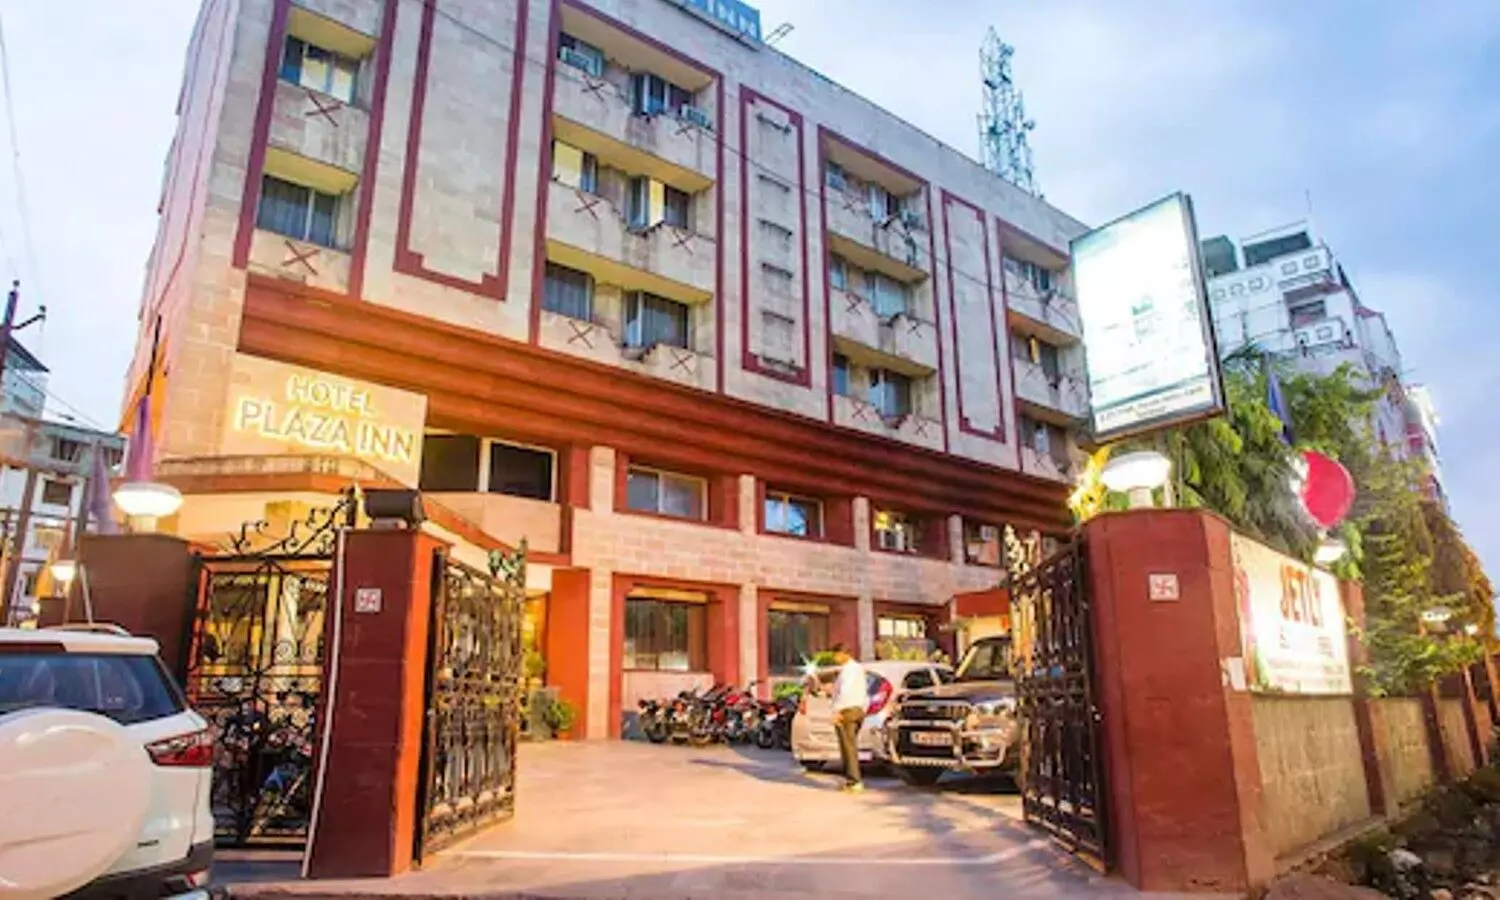 Budget Hotels in Varanasi: वाराणसी में कम बजट में रूके अच्छे होटल में, रूकने का आ जाएगा मजा